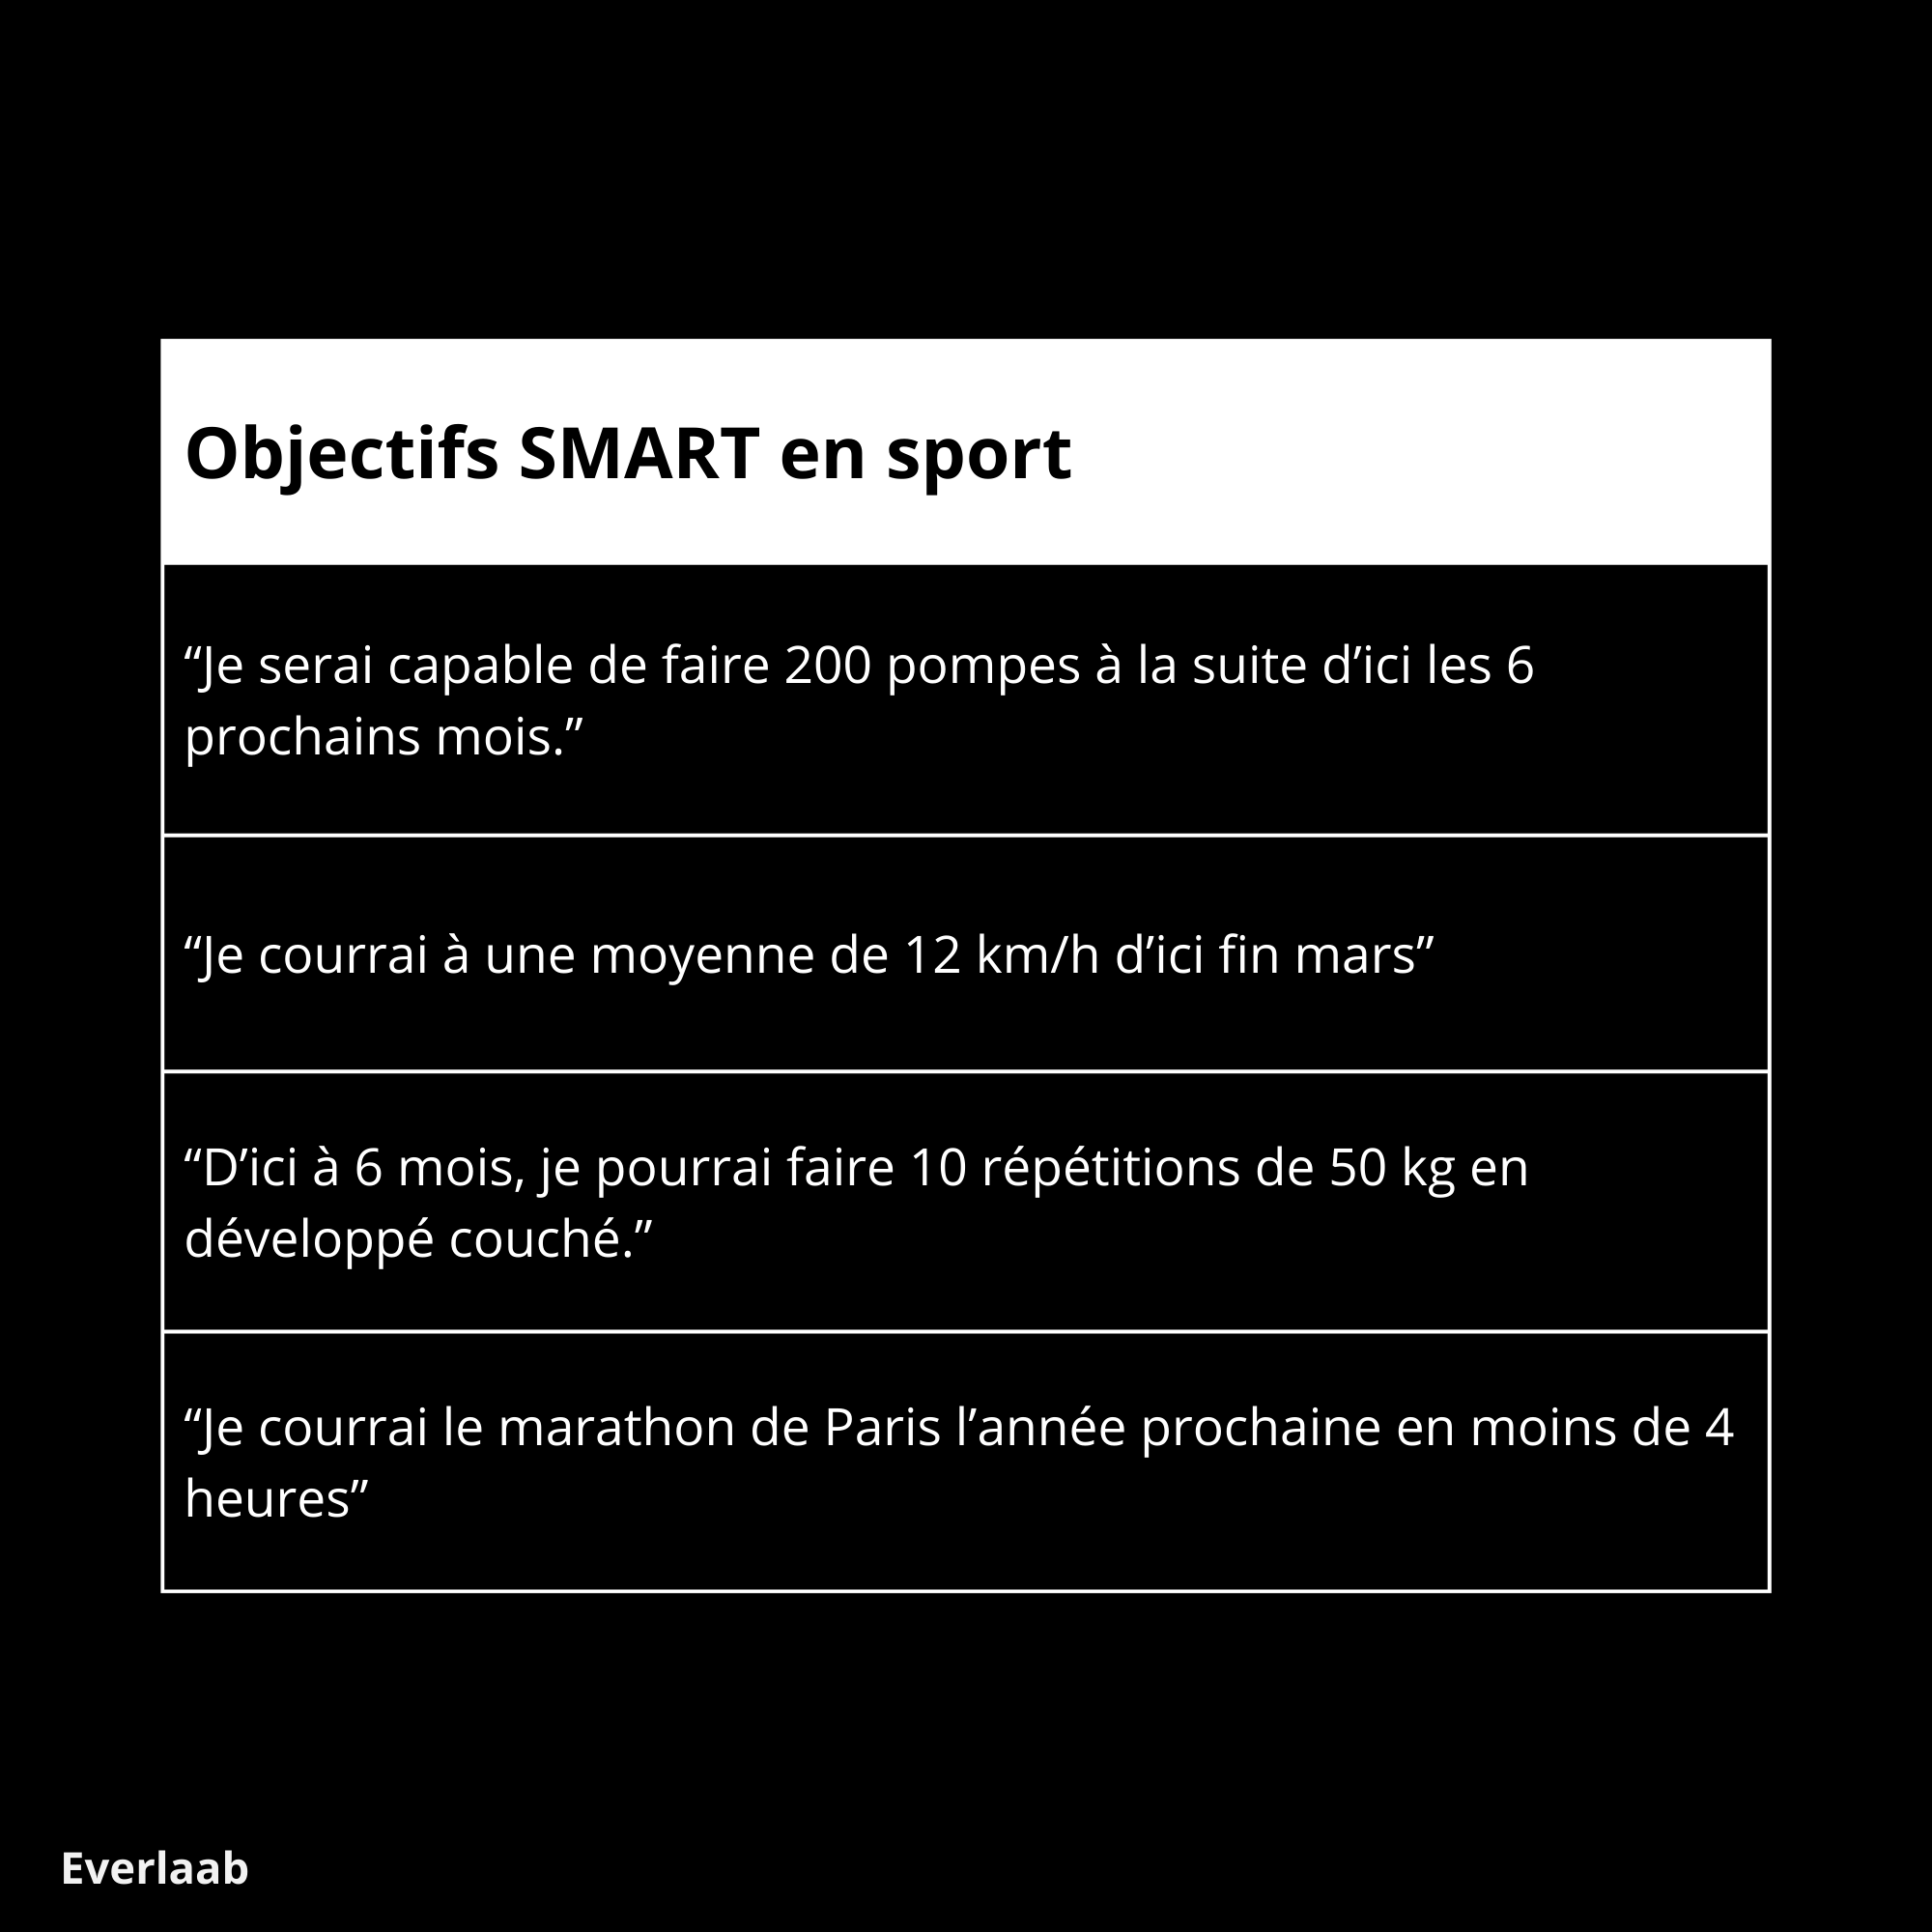 exemples d'objectifs smart en sport